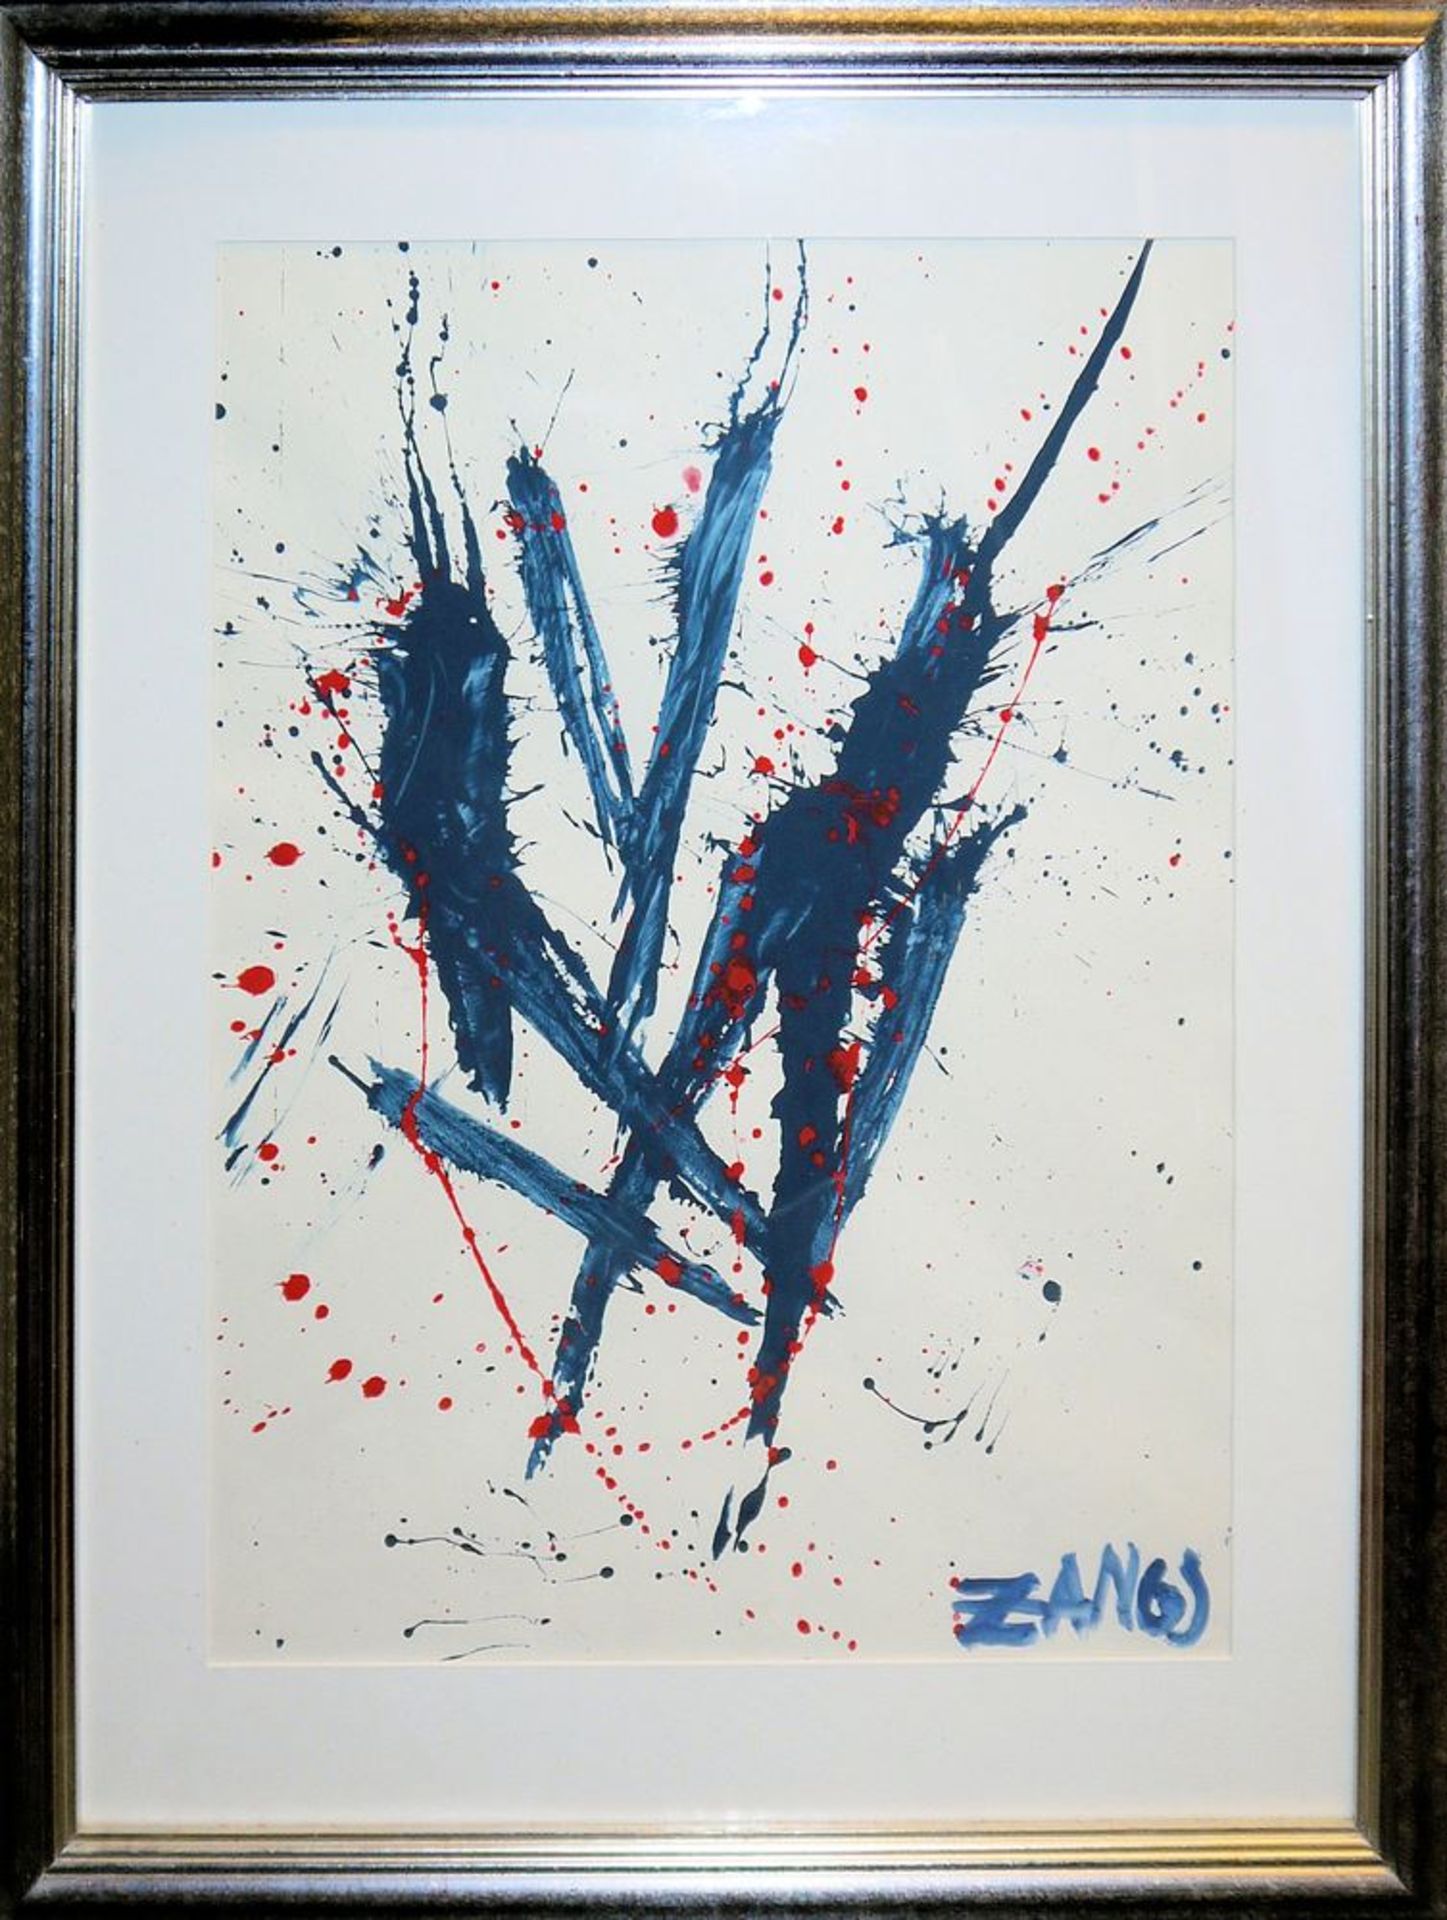 Herbert Zangs, zugeschrieben, Expressive abstrakte Komposition in blau und rot, Acrylgemälde, gerah